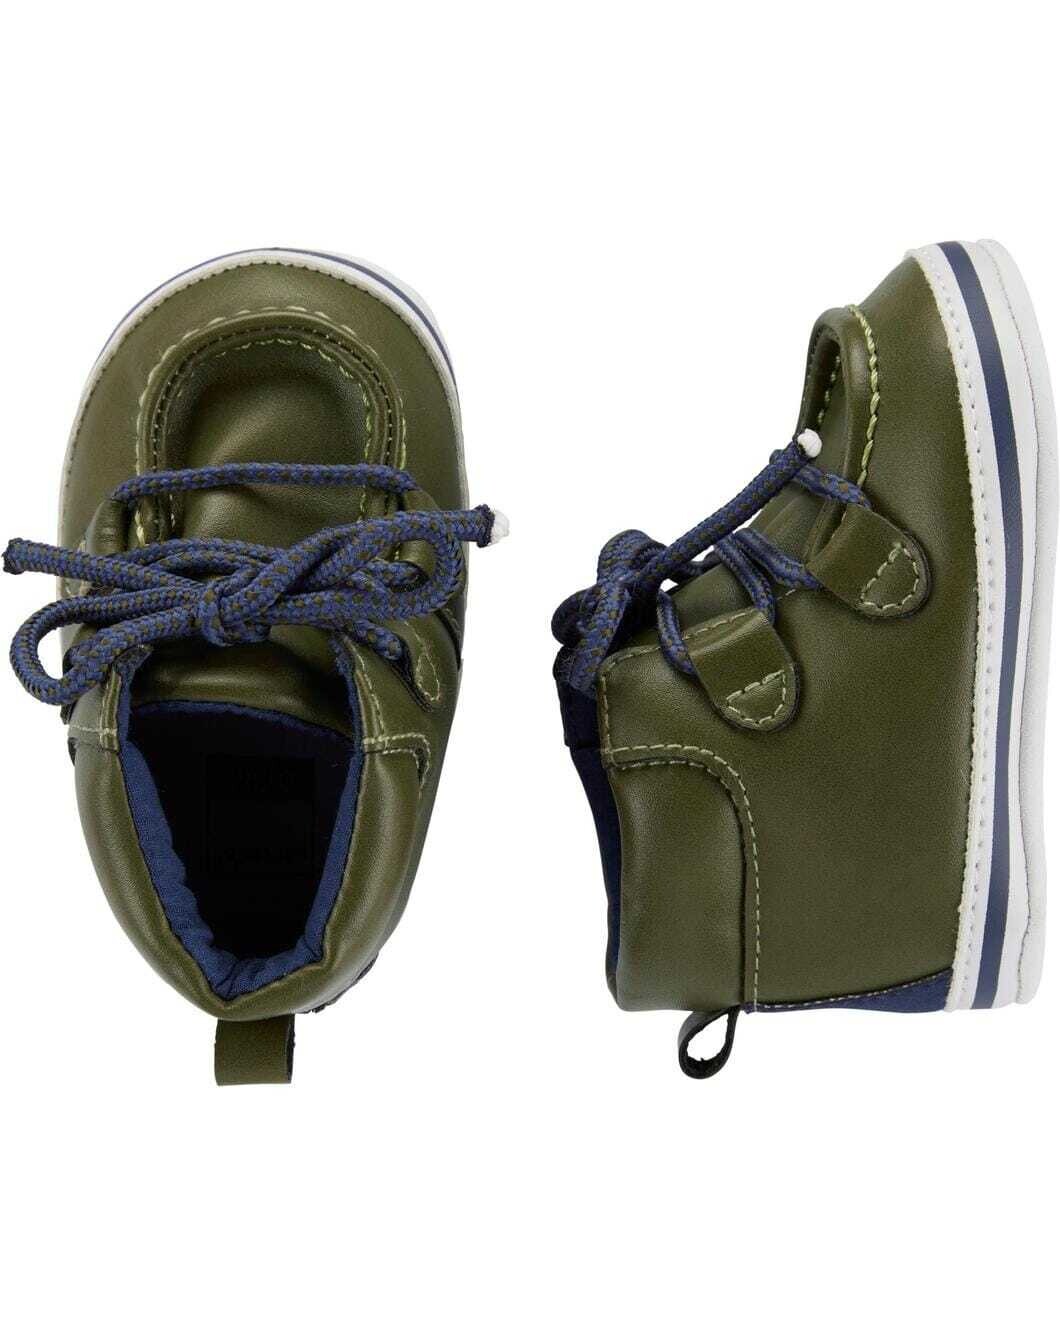 Original Carter's Baby Boys Green Boot Crib Shoes